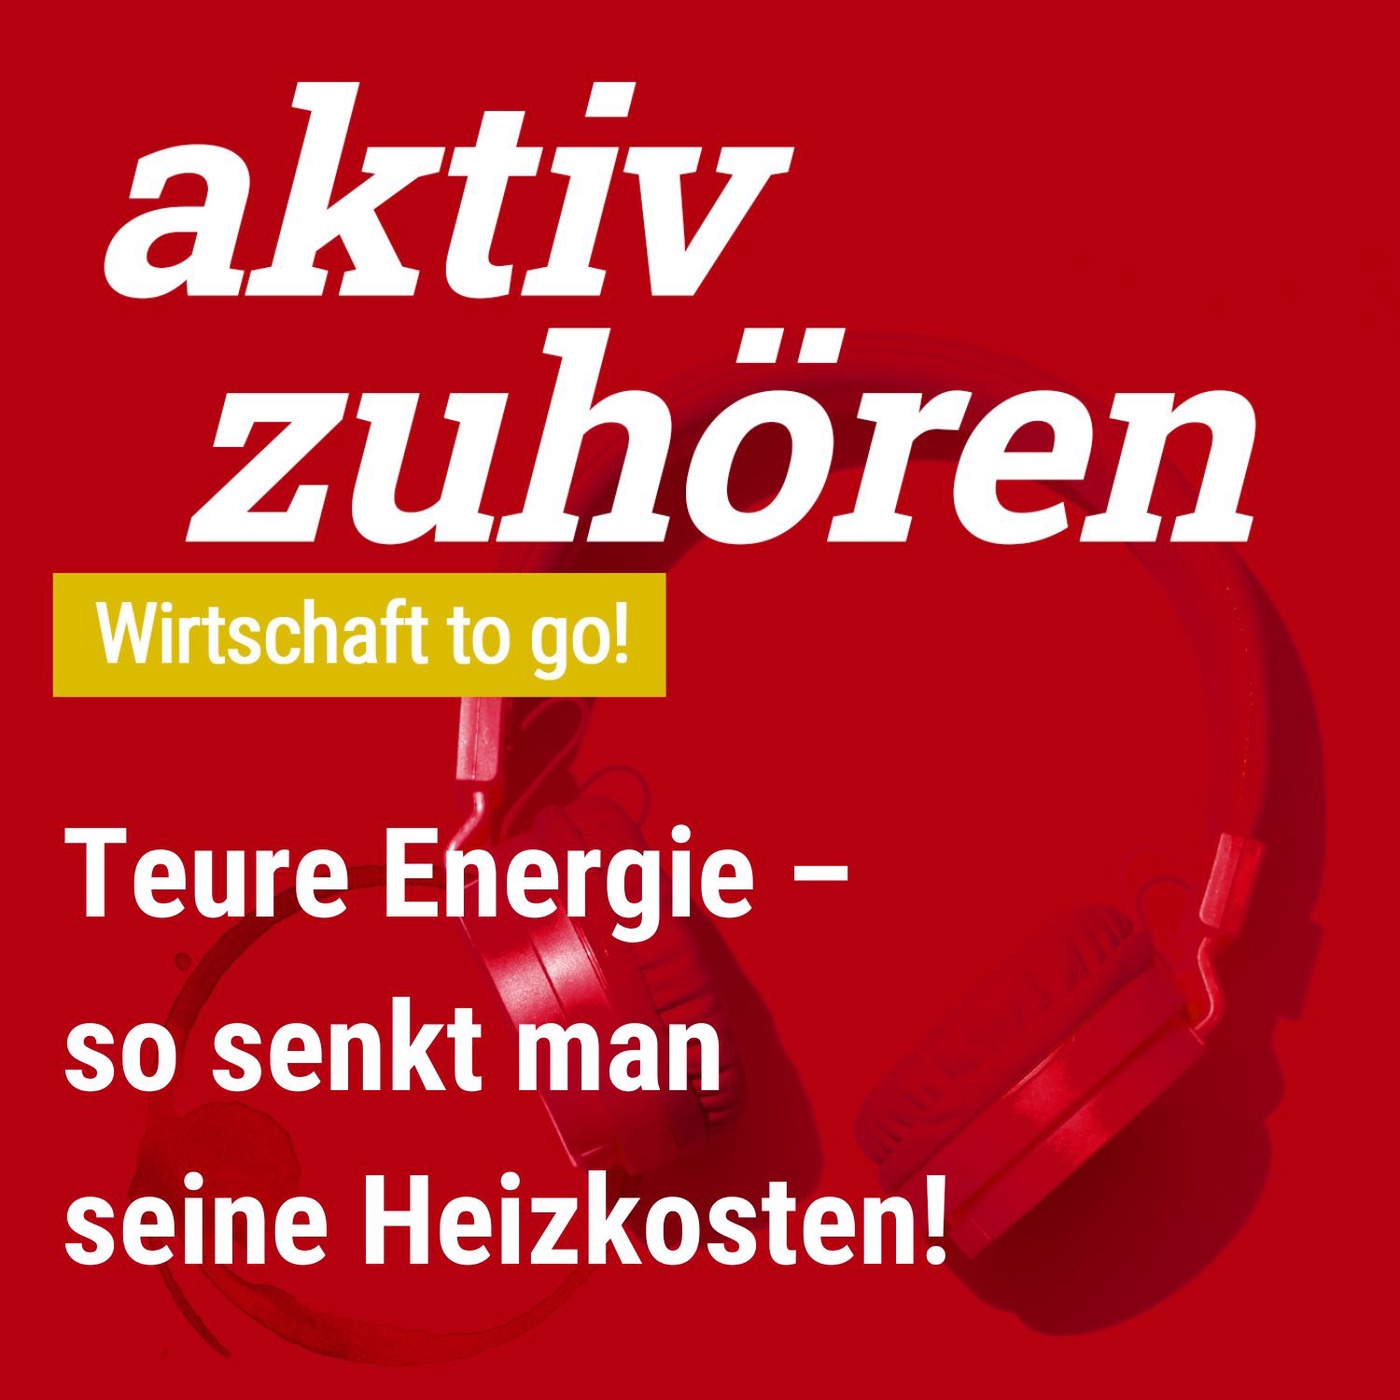 aktiv zuhören: Wirtschaft to go! - Teure Energie - so senkt man seine Heizkosten!